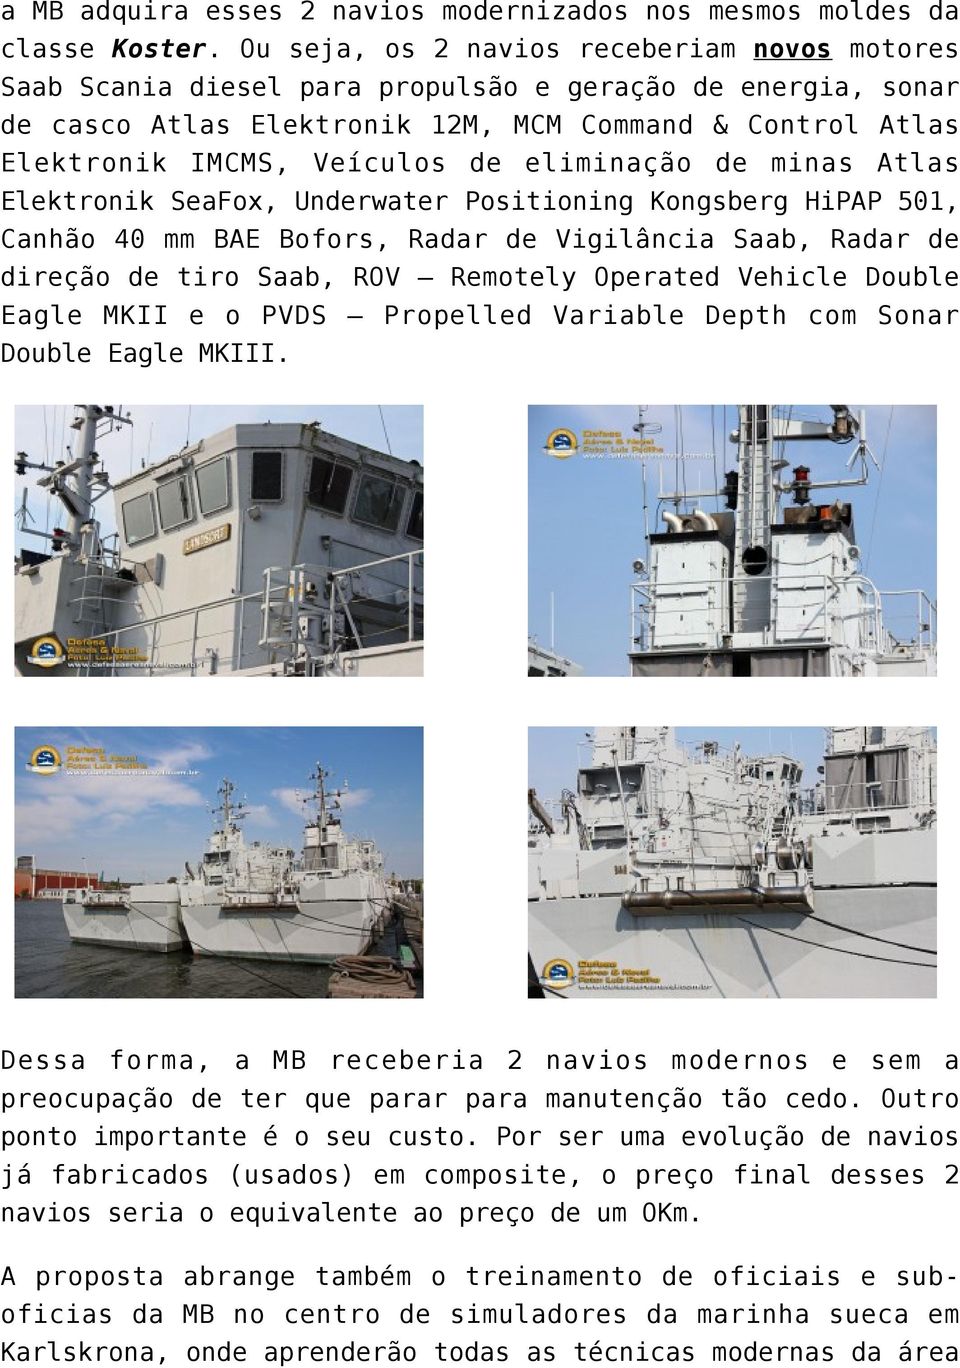 eliminação de minas Atlas Elektronik SeaFox, Underwater Positioning Kongsberg HiPAP 501, Canhão 40 mm BAE Bofors, Radar de Vigilância Saab, Radar de direção de tiro Saab, ROV Remotely Operated